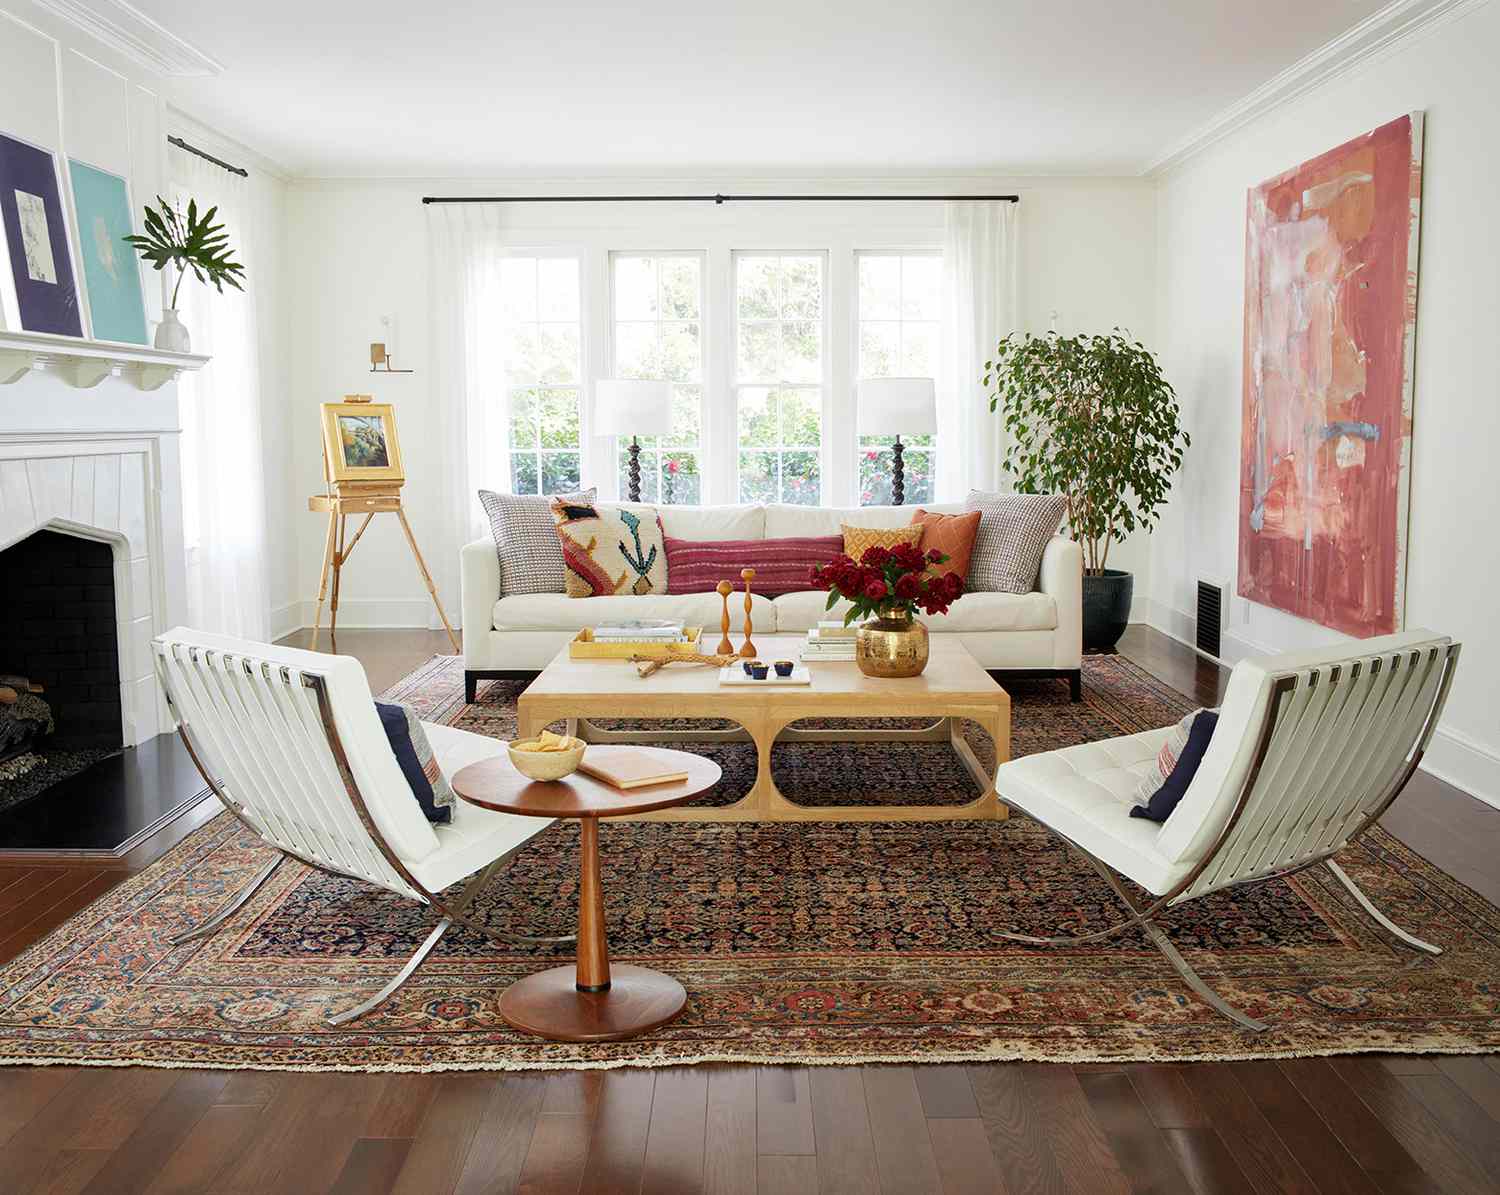 Living Room Furniture Arrangement Tips You Should Know